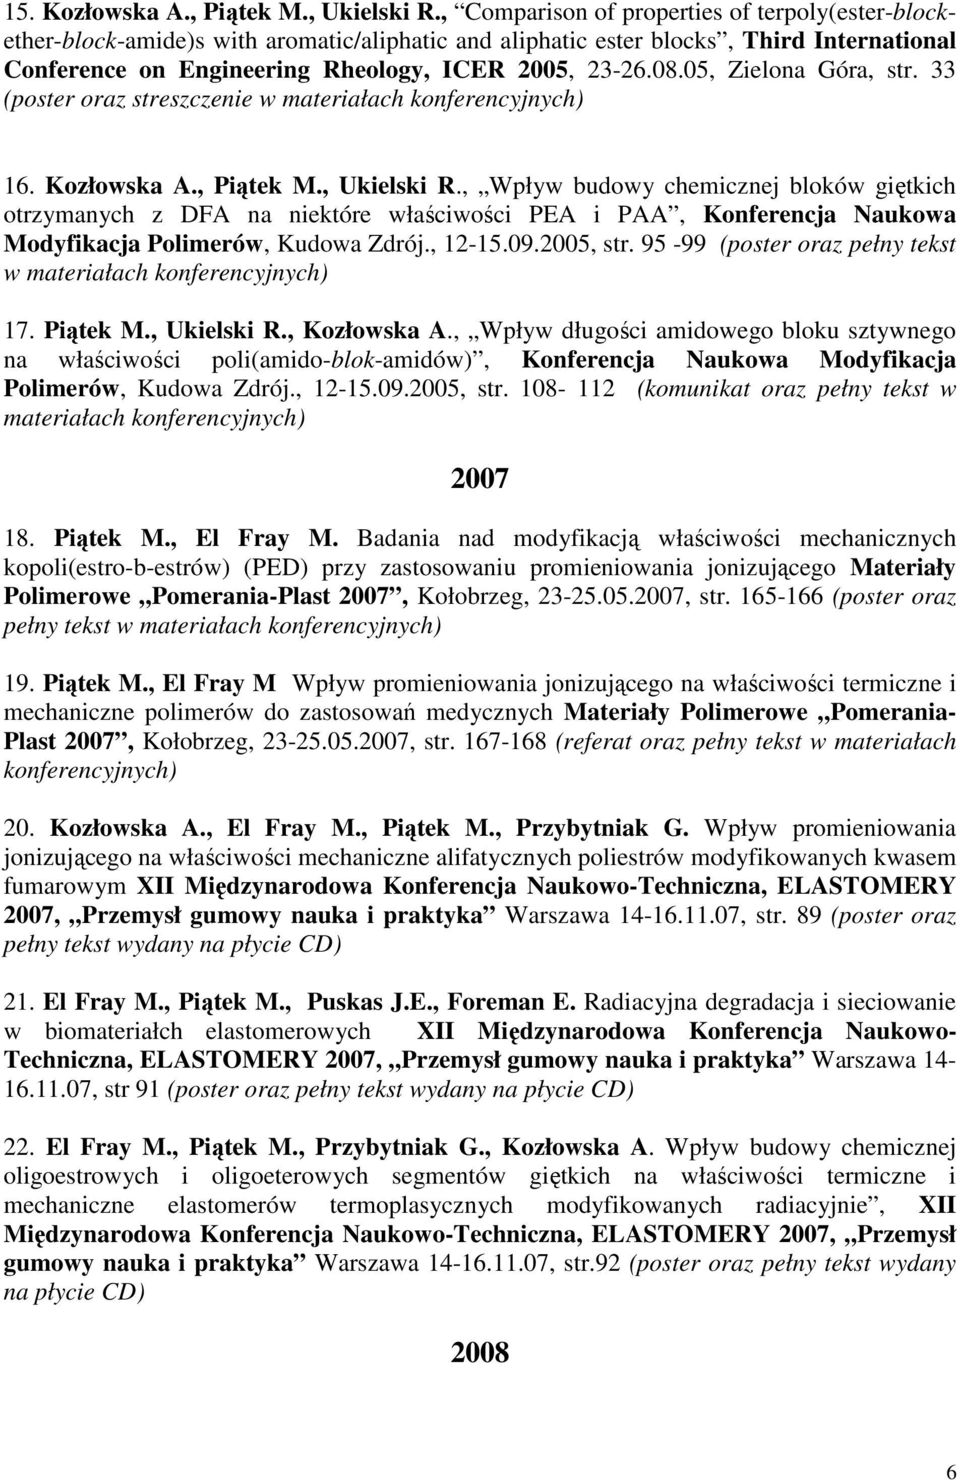 05, Zielona Góra, str. 33 (poster oraz streszczenie w 16. Kozłowska A., Piątek M., Ukielski R.